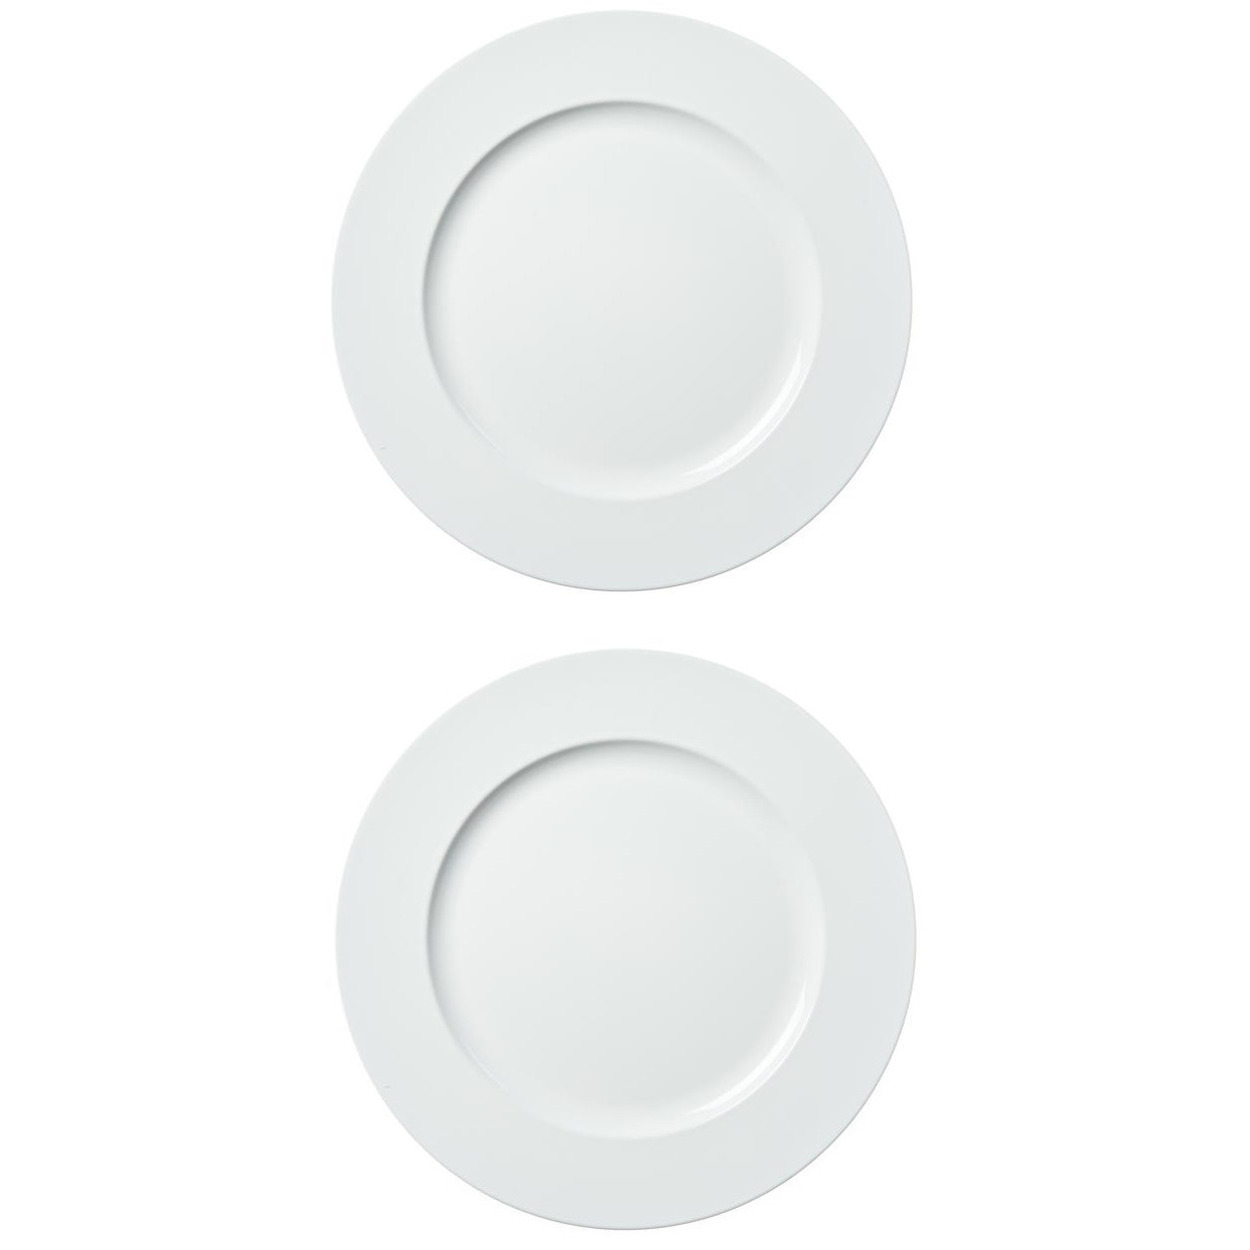 8x stuks diner borden-onderborden wit 33 cm